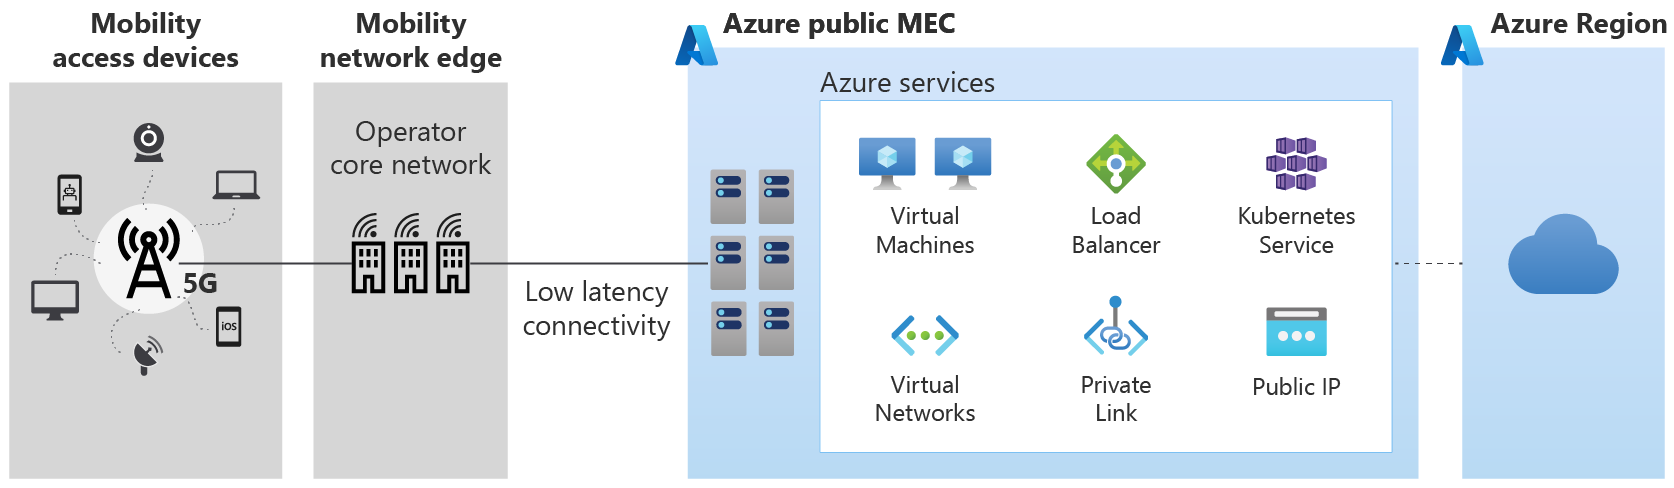 Diagram showing Azure public MEC service deployment.